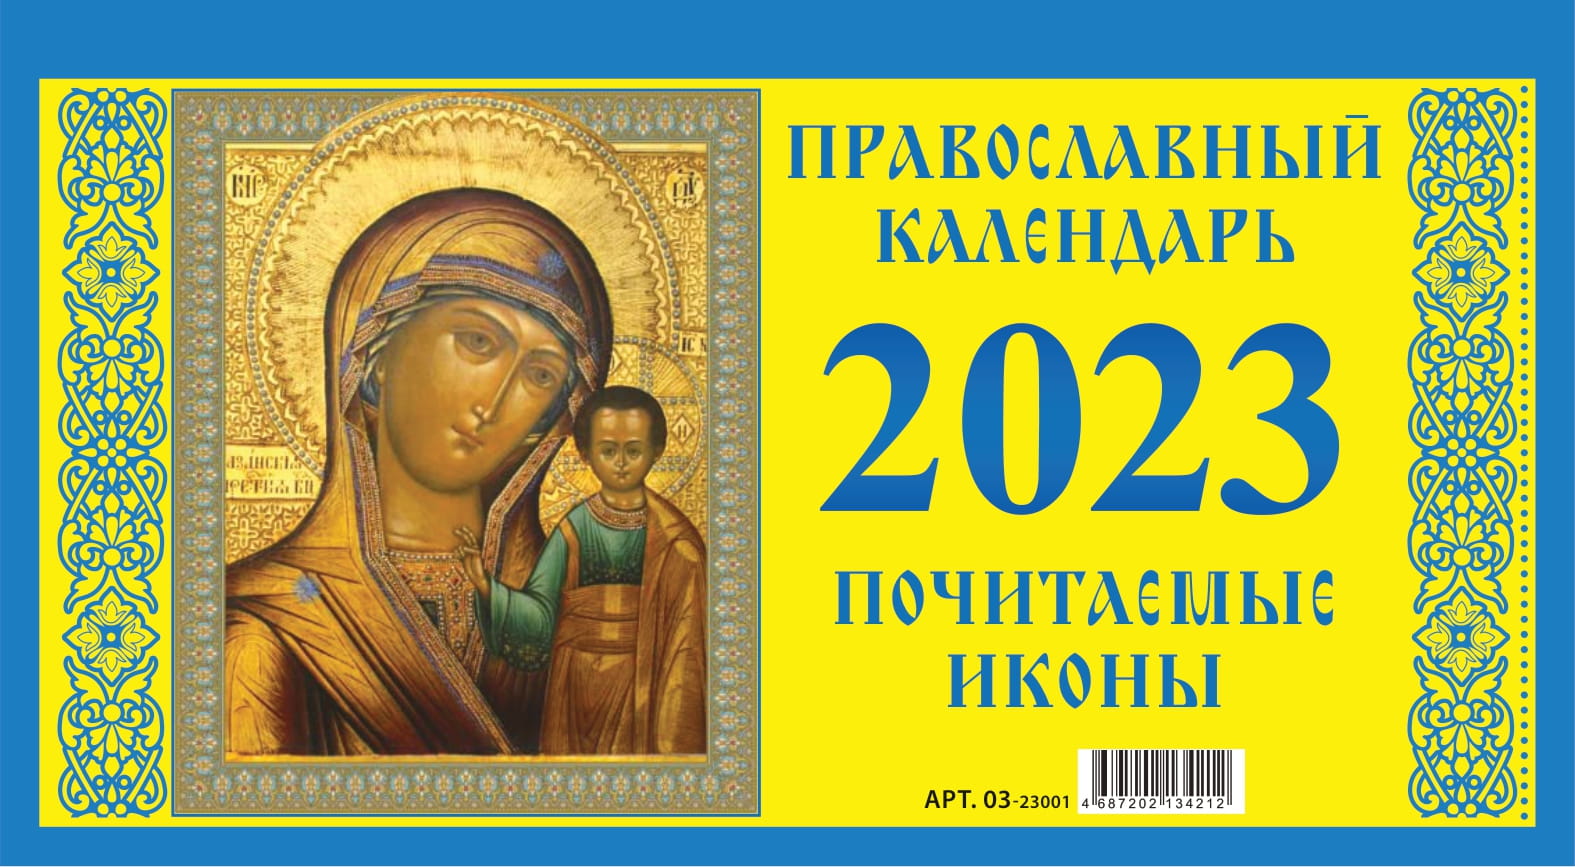 Календарь настольный 2023 (домик) 03-23001 Почитаемые иконы